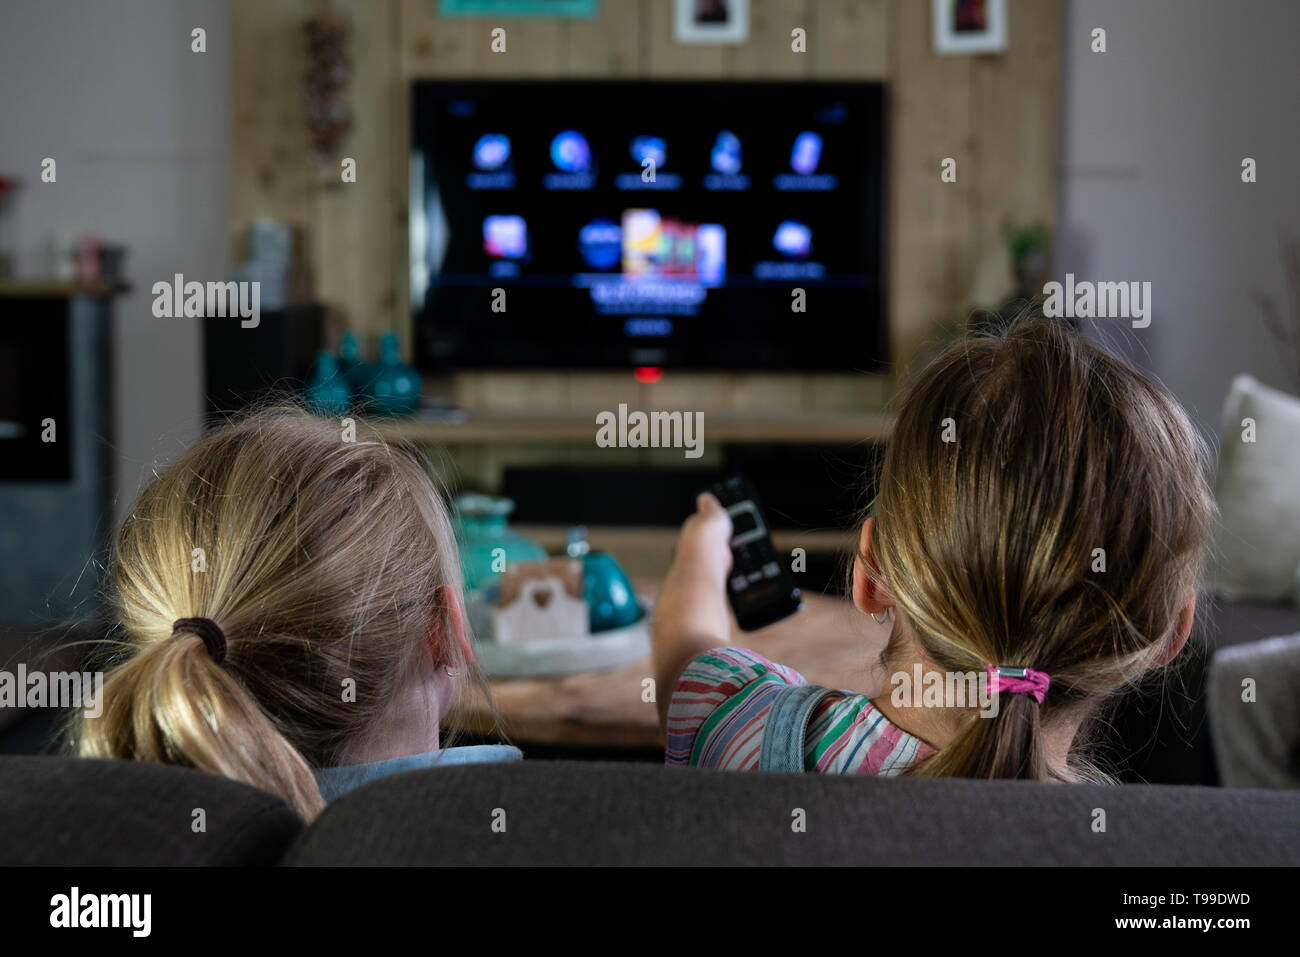 Vue arrière de deux enfants glissant à travers les applications sur une télévision intelligente. retour des enfants avec l'accent mis sur la télécommande. Le futurisme au quotidien Banque D'Images